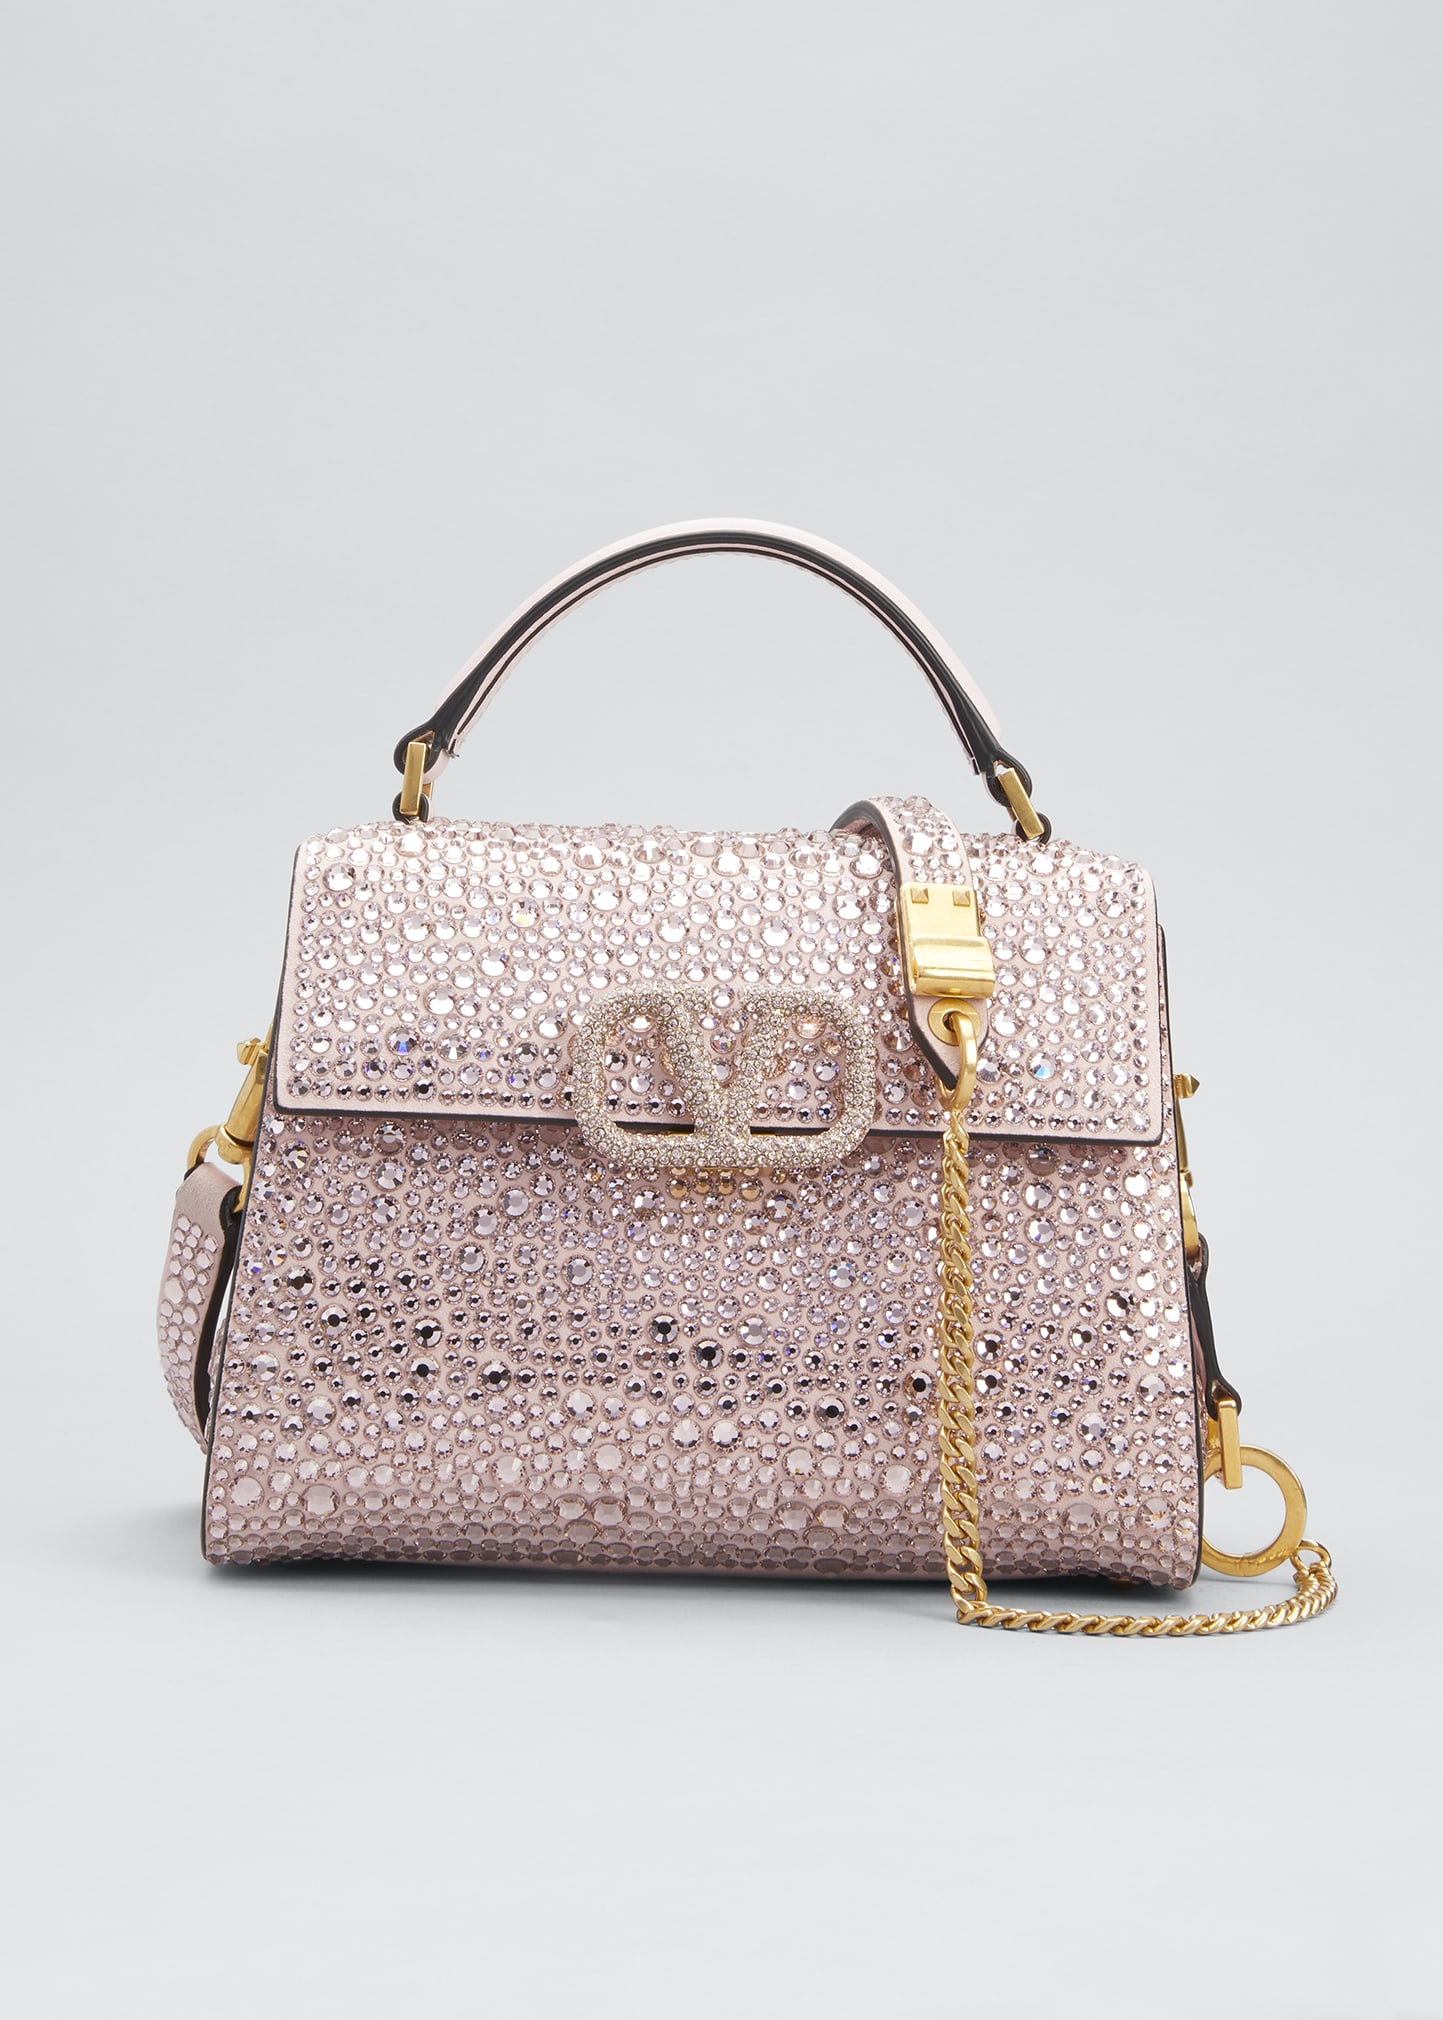 Valentino Embellished Vsling Top-Handle Bag